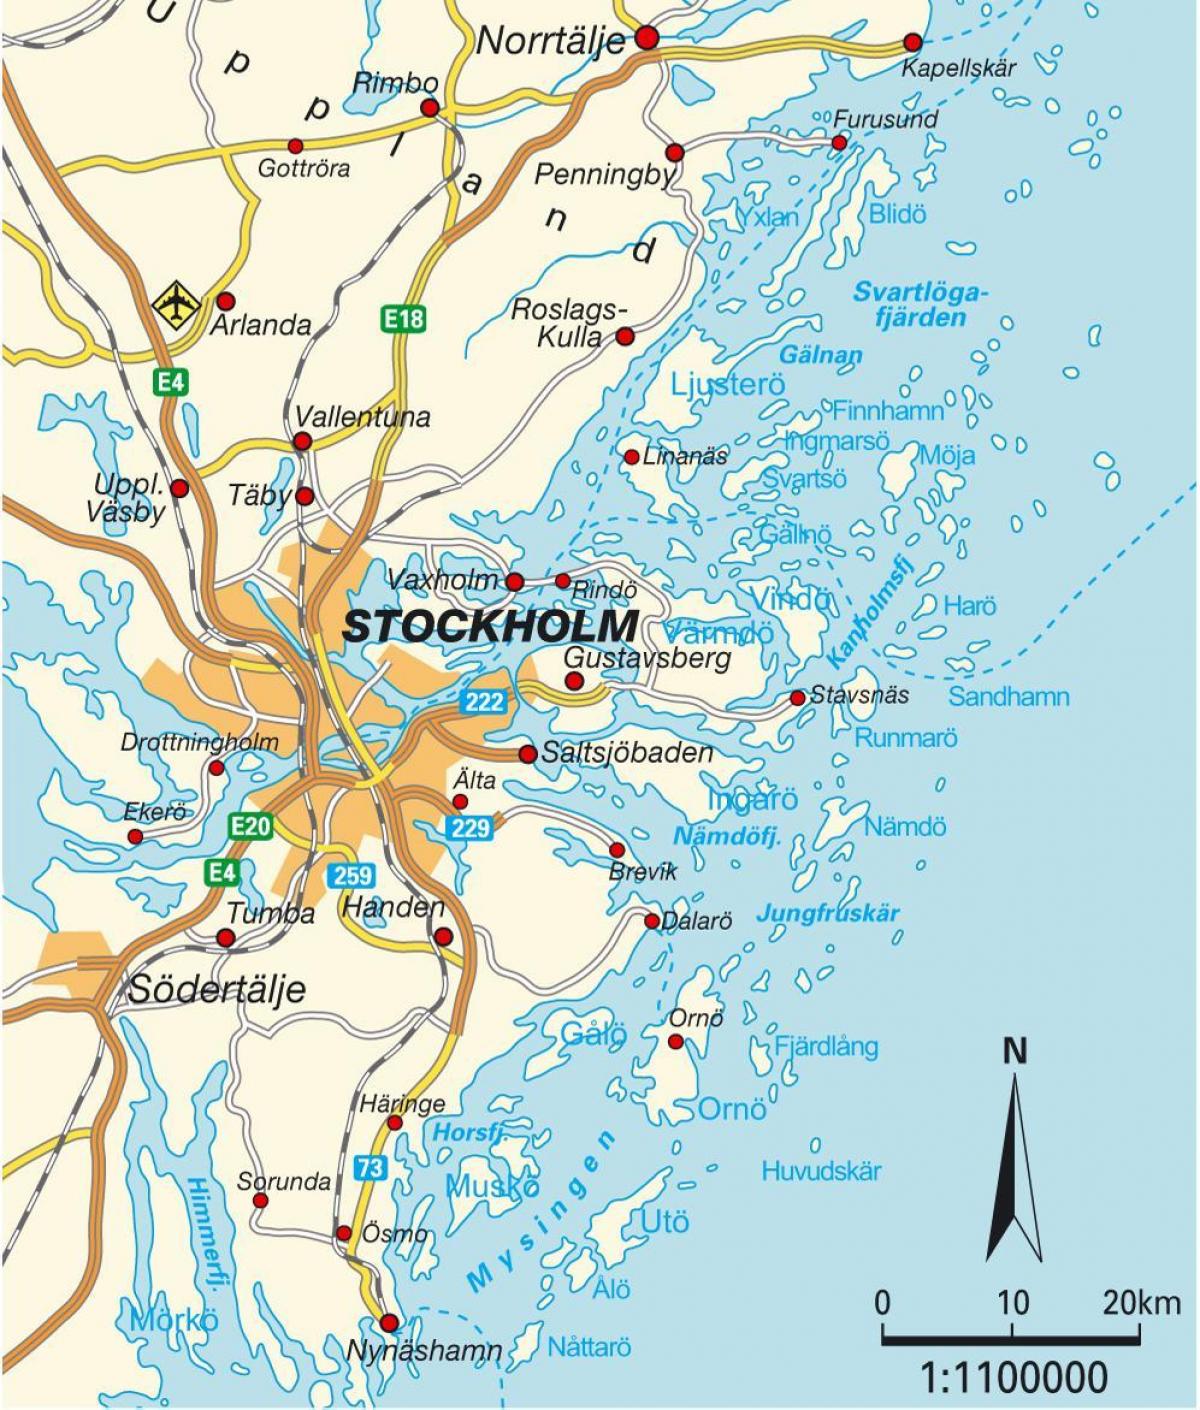 Stockholm på kartan